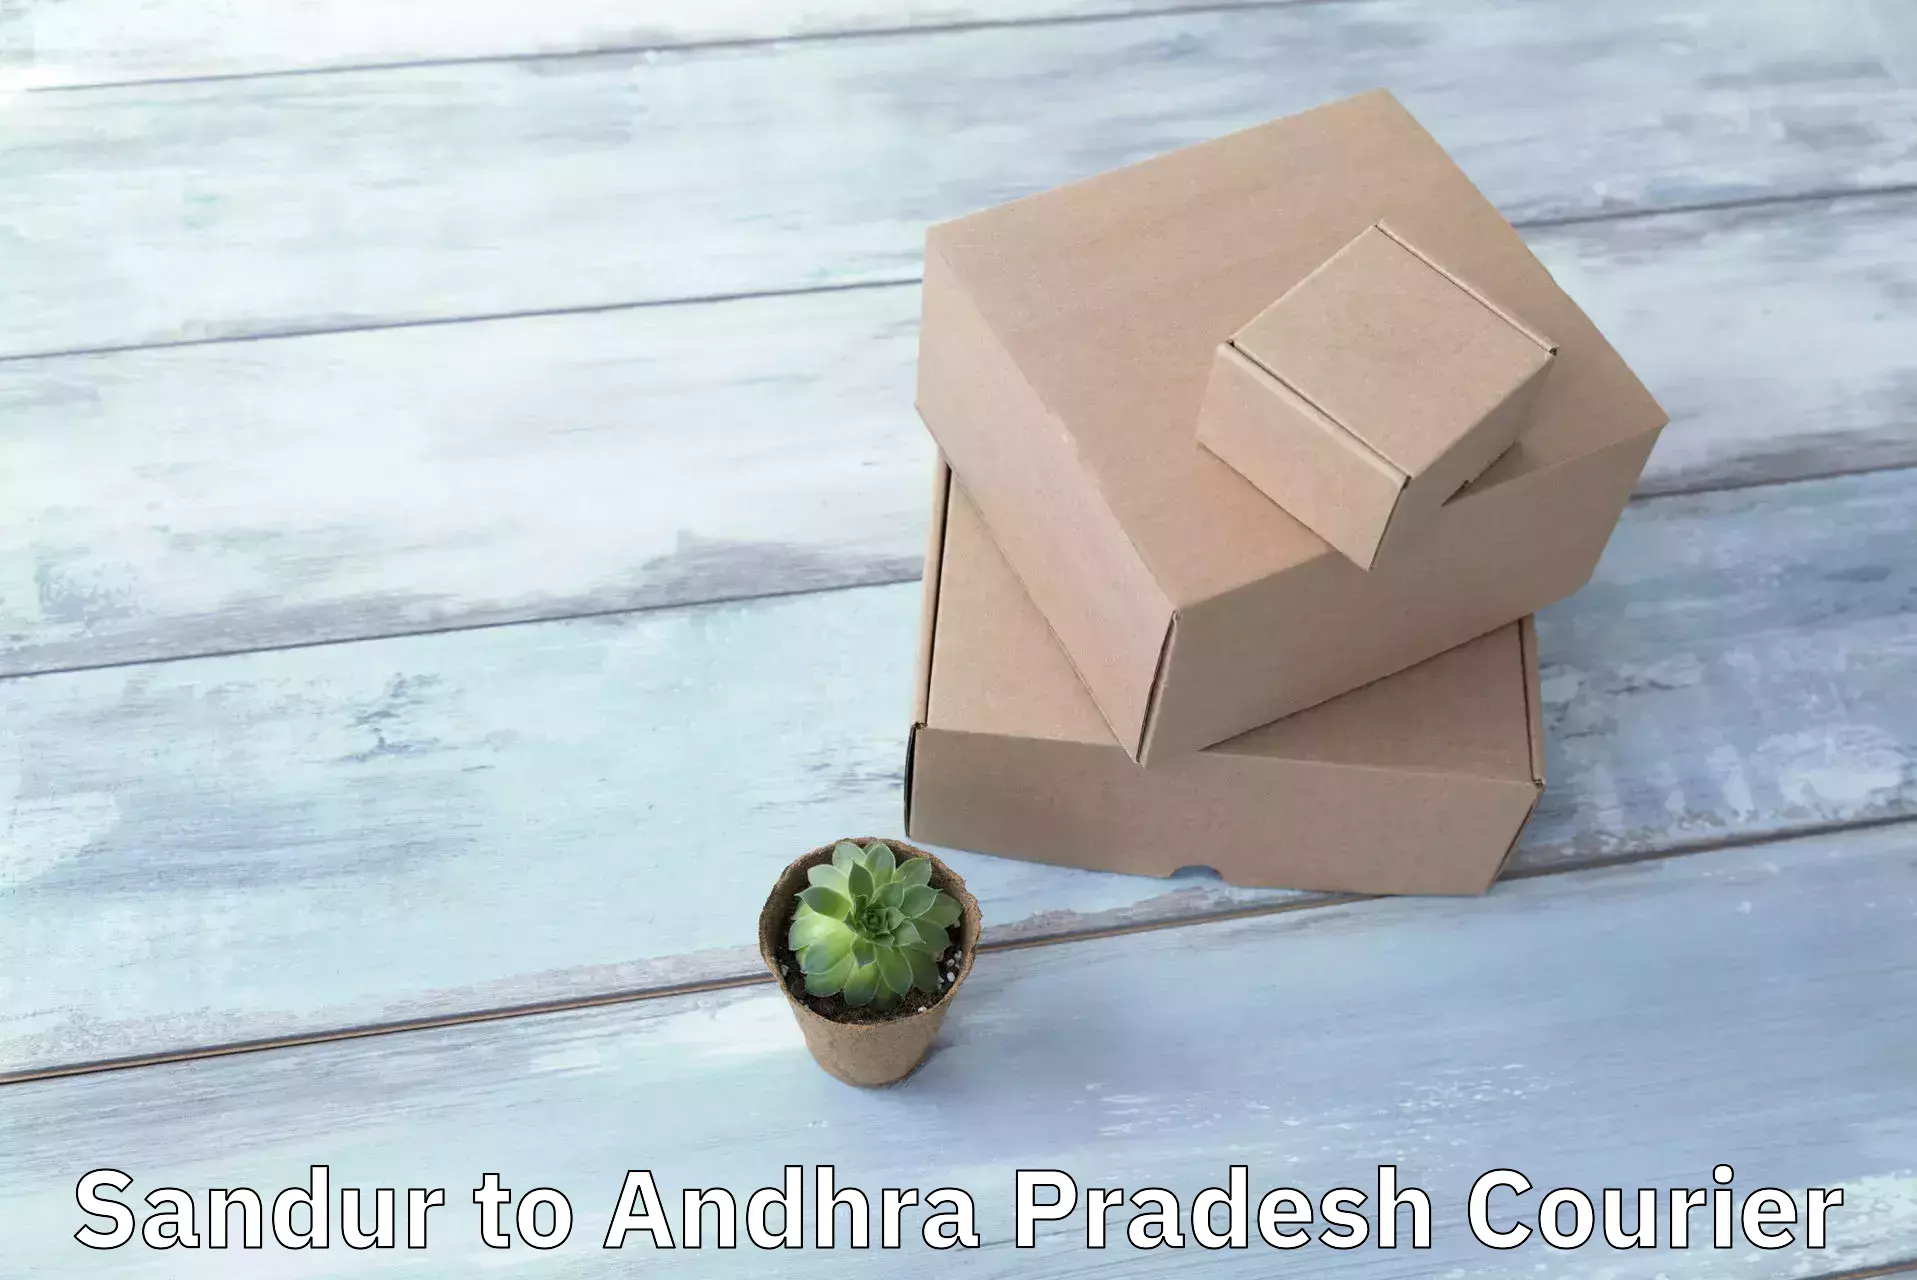 Custom courier packages Sandur to Guntur